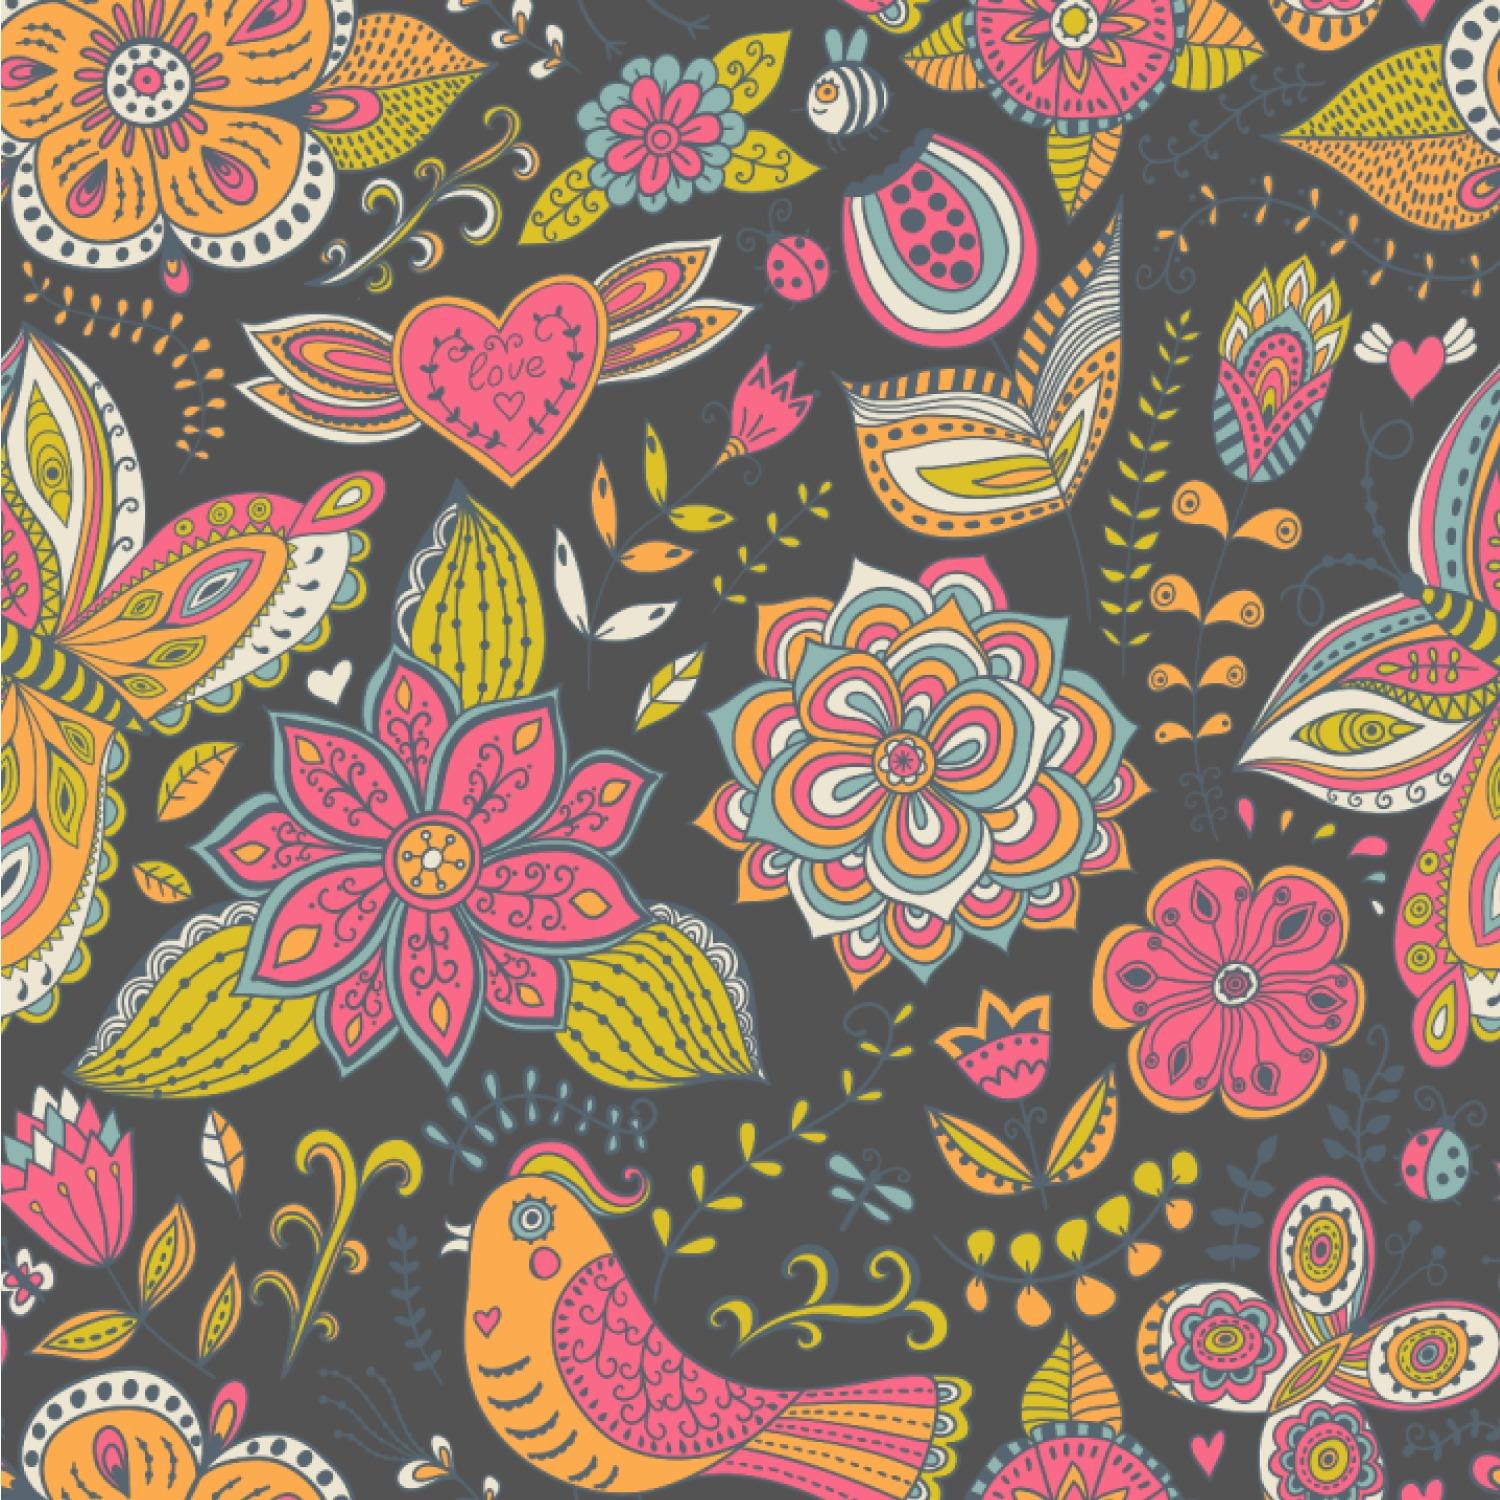 Birds And Butterflies Wallpaper design ideas